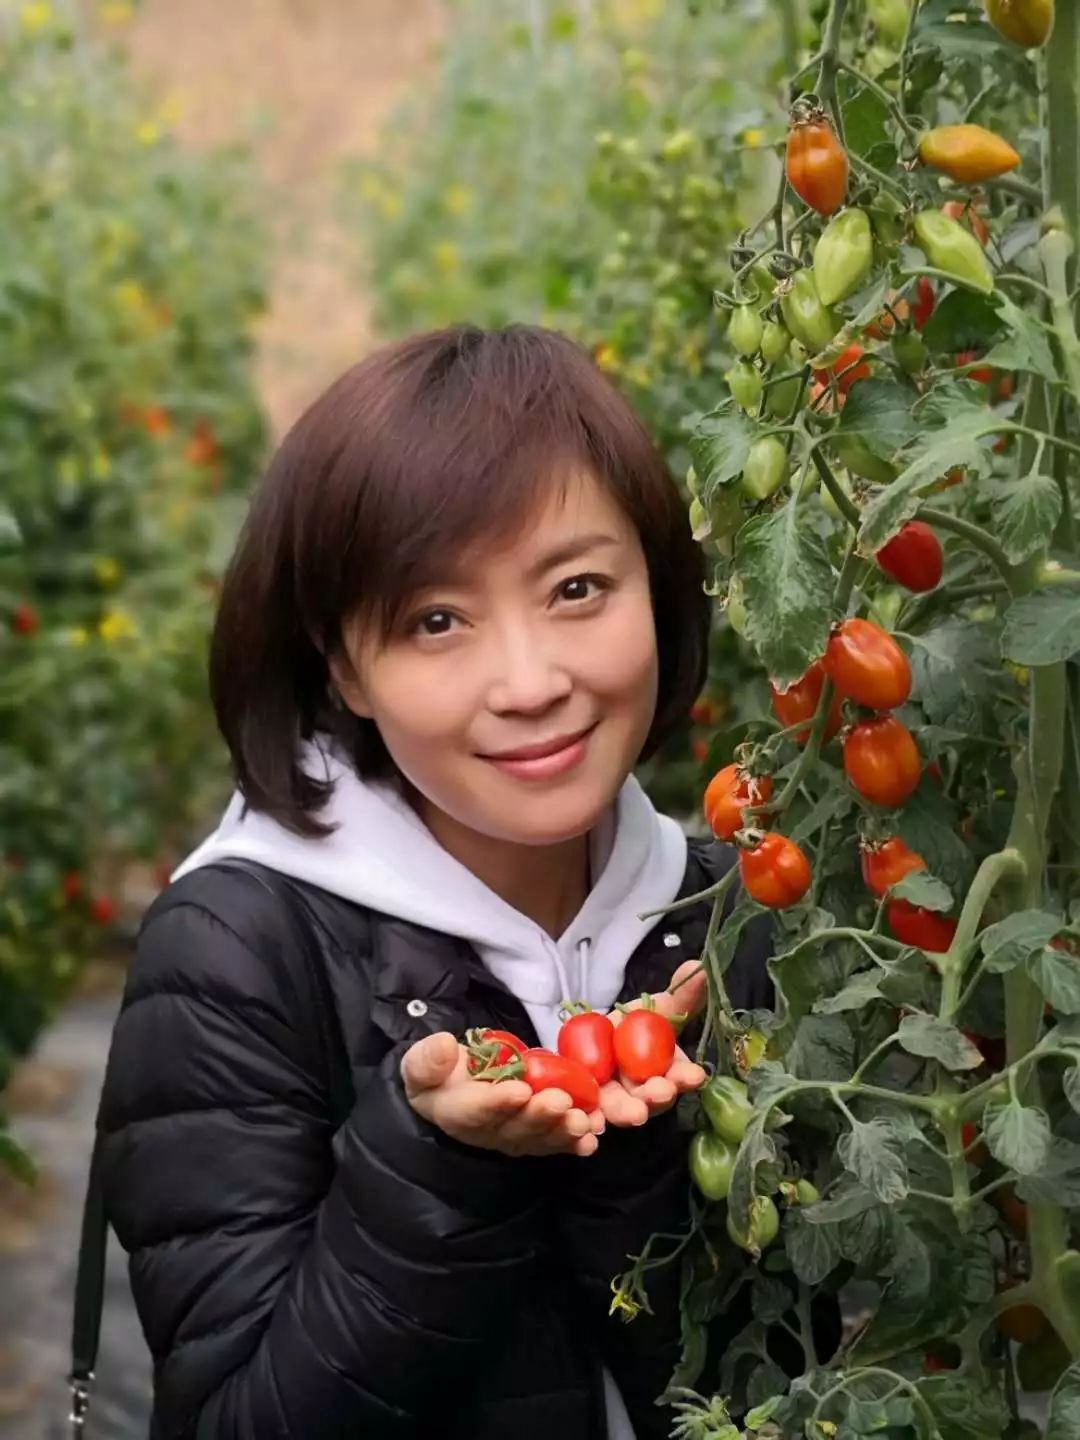 长葛哪家农场:梨园春主持人庞晓戈刚刚跑来采摘水果小番茄?